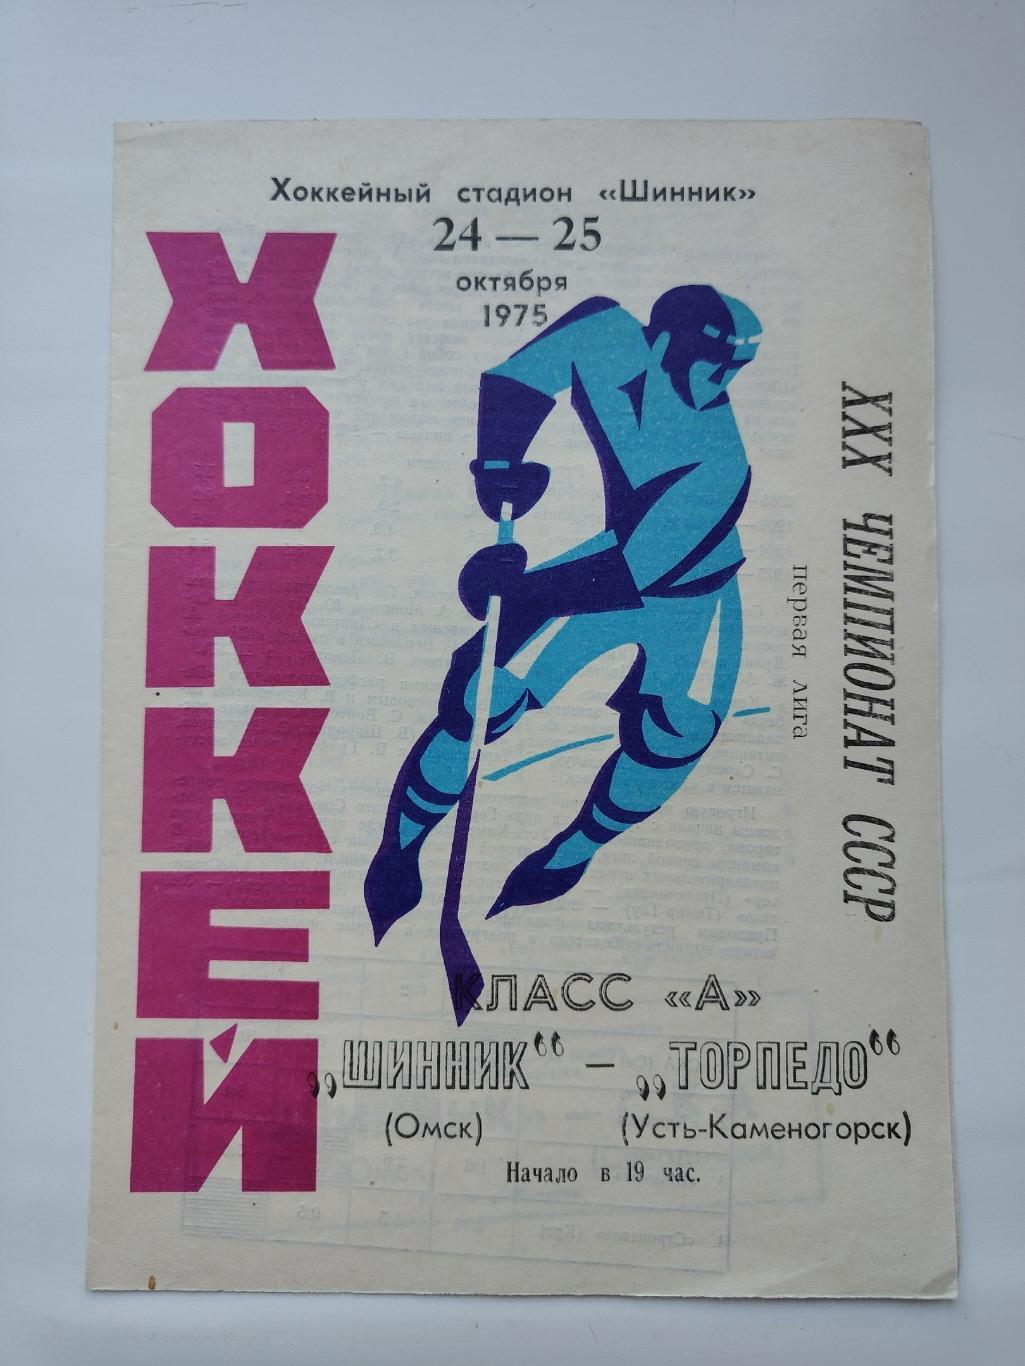 Шинник Омск - Торпедо Усть-Каменогорск 24/25 октября 1975